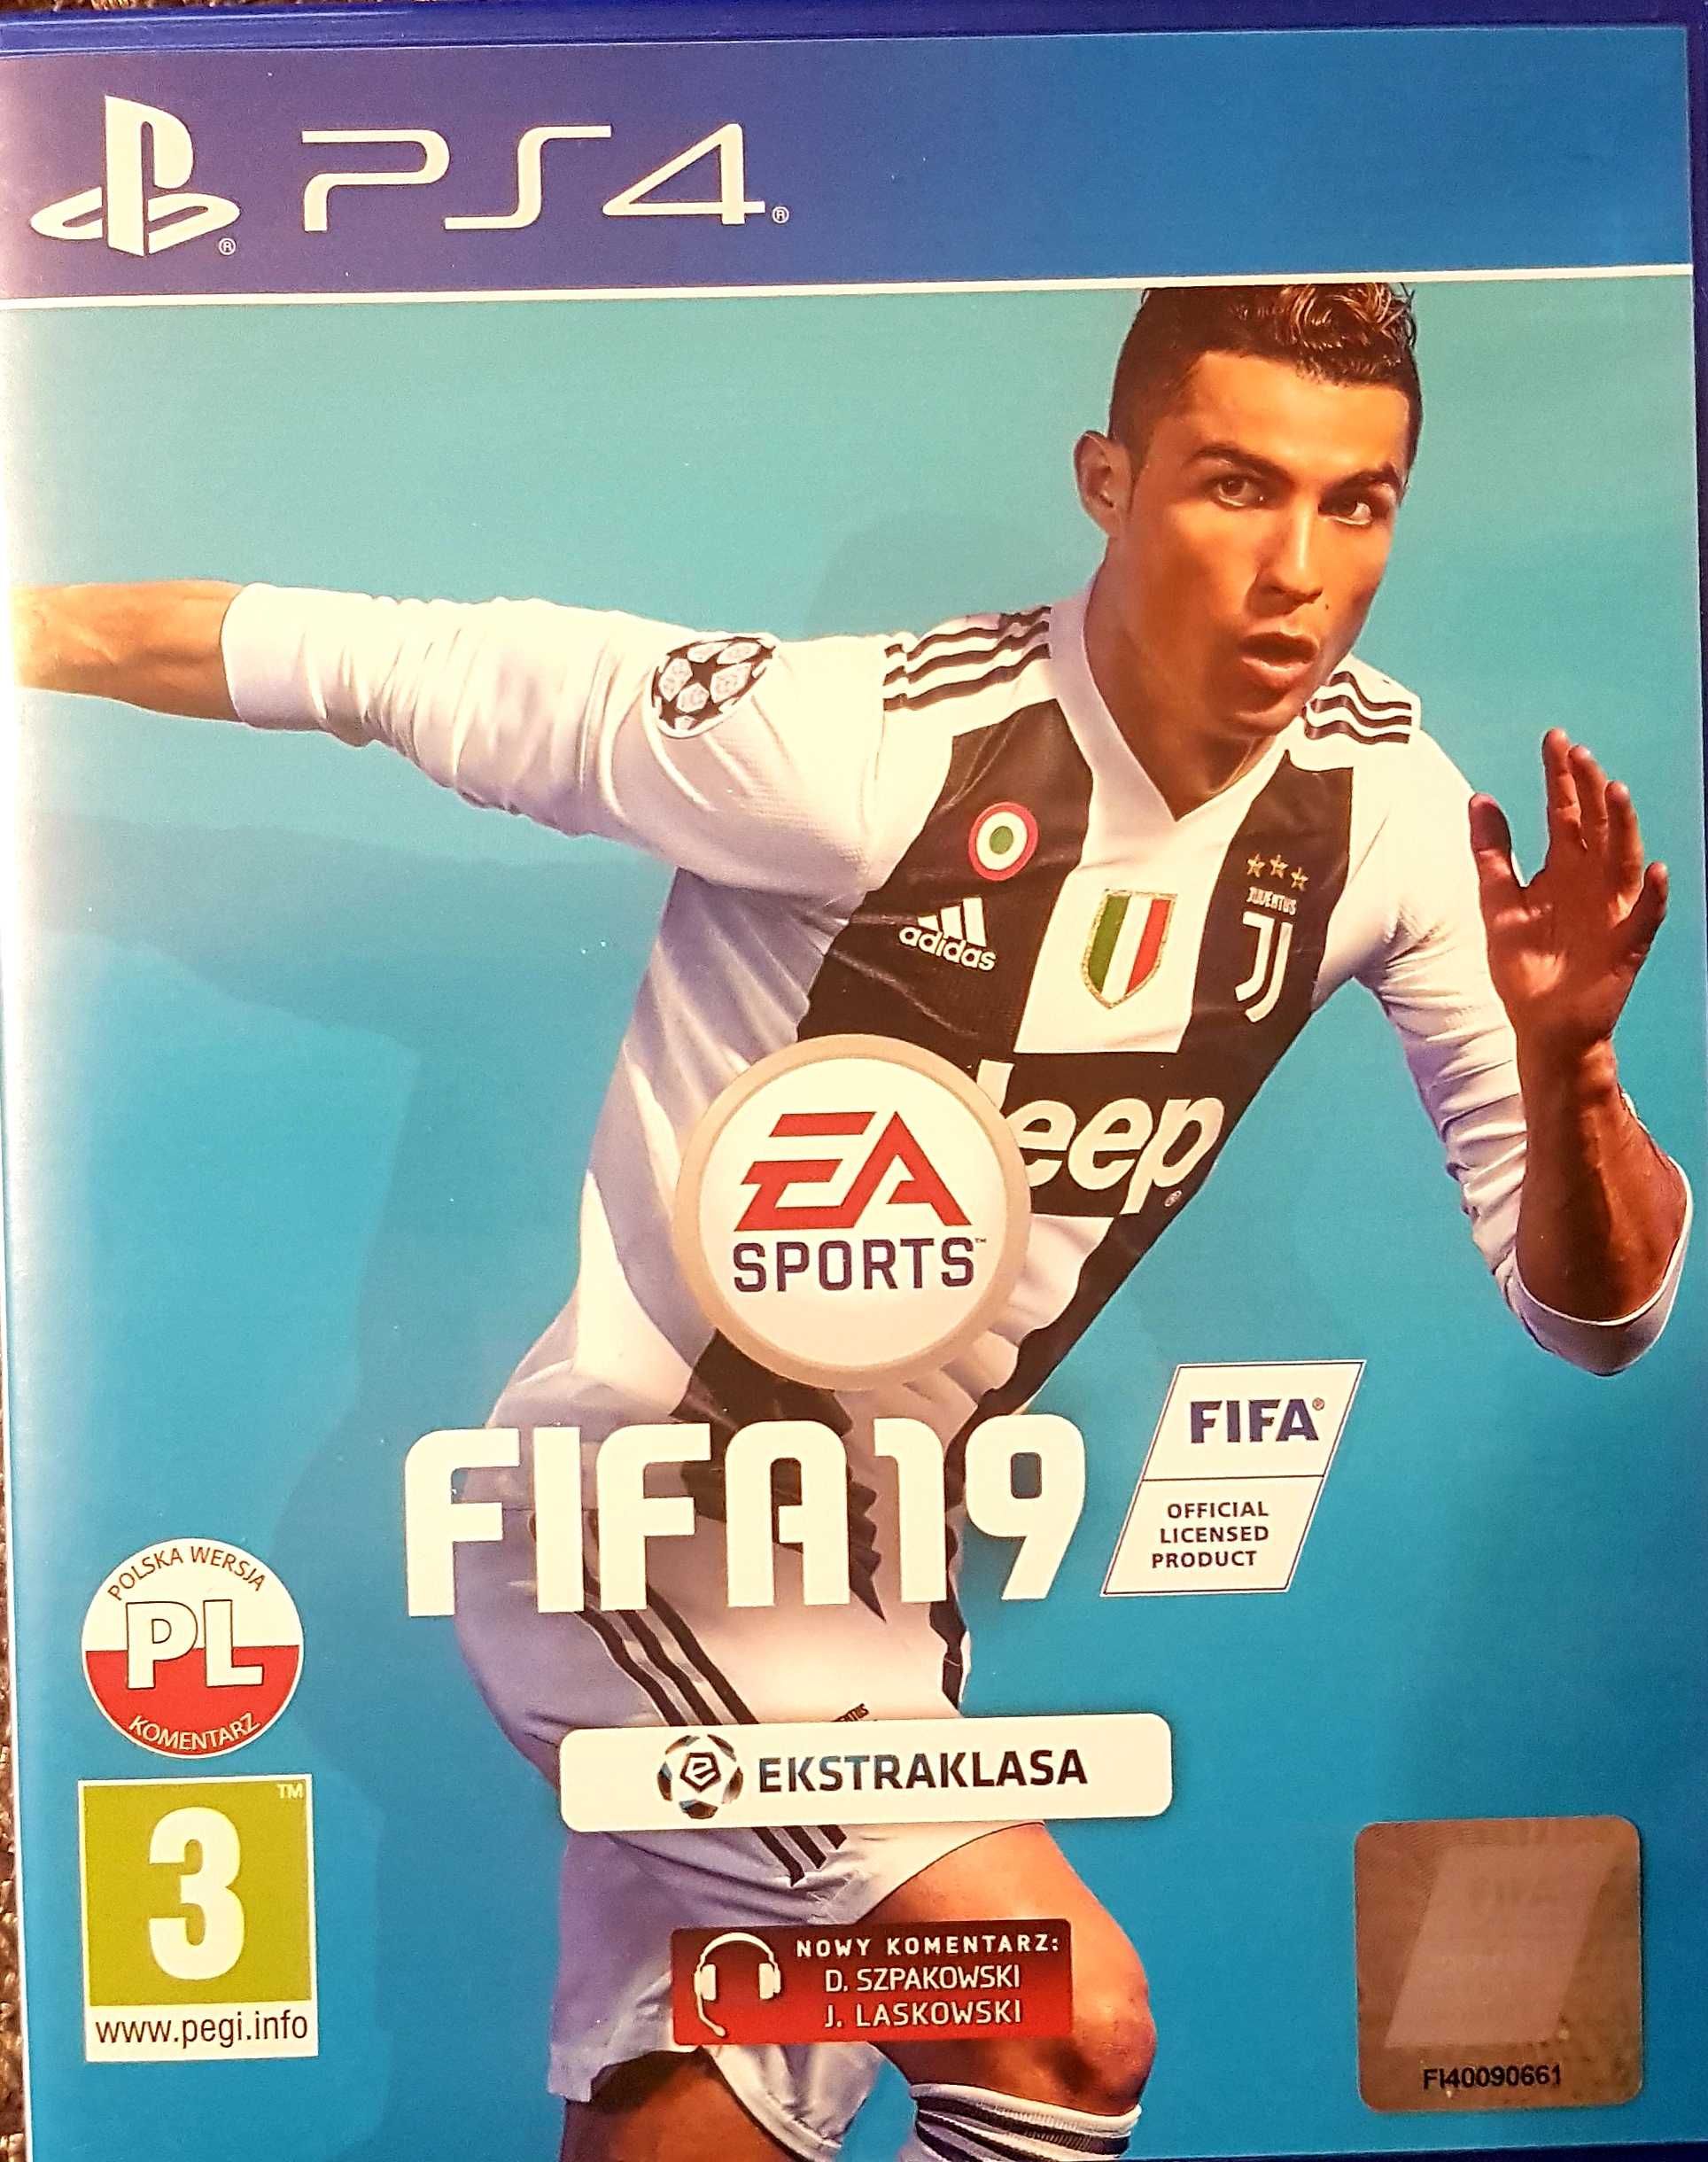 FIFA19 gra na konsolę PS4